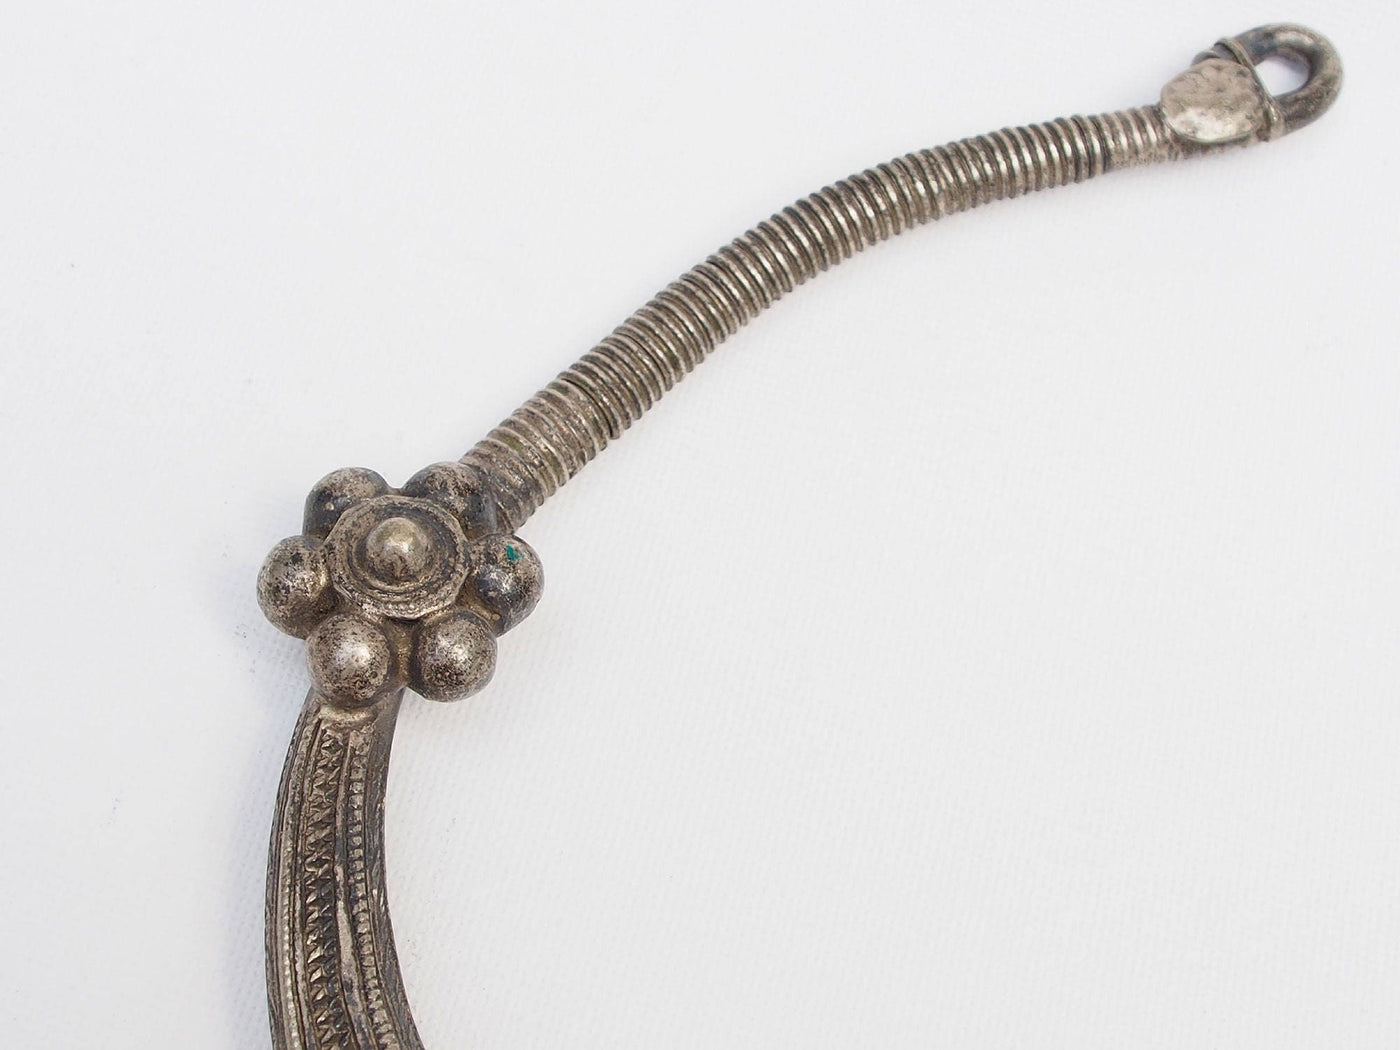 Silberne Hochzeits Halskette aus Afghanistan No:17/7 halsketten Orientsbazar   